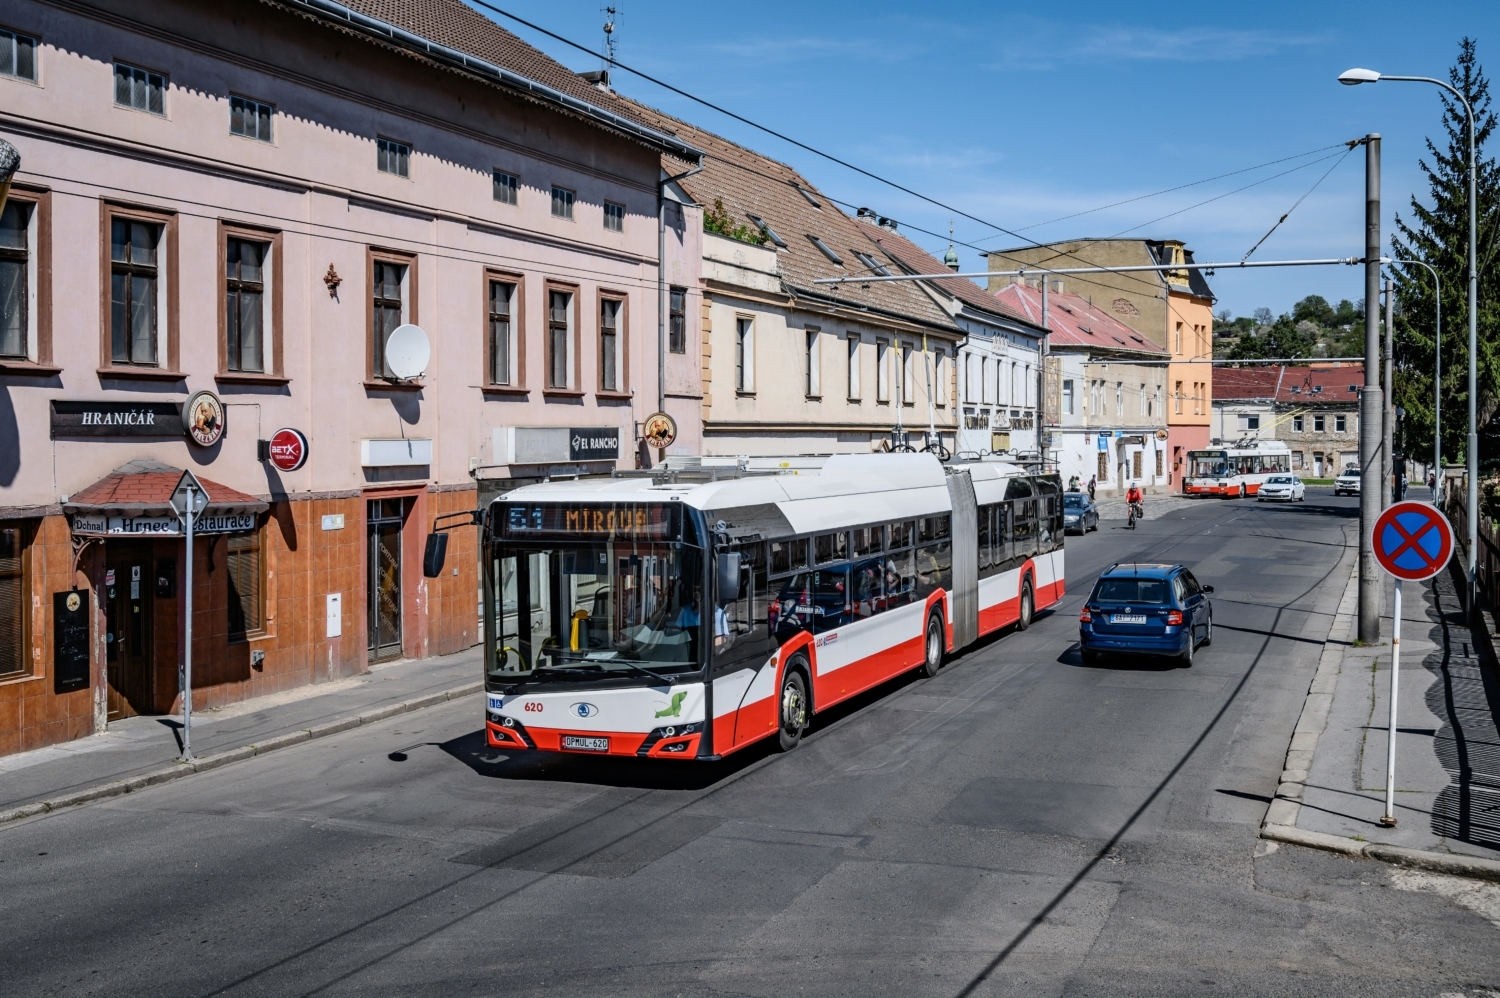 V Ústí nad Labem již slouží 19 trolejbusů 27 Tr, z nichž devět odpovídá novější generaci Trollina a je vybaveno trakčními bateriemi, tj. odpovídají tzv. parciálním trolejbusům. Bateriemi bude vybaveno i všech 33 nových vozů. (foto: Honza Tran)